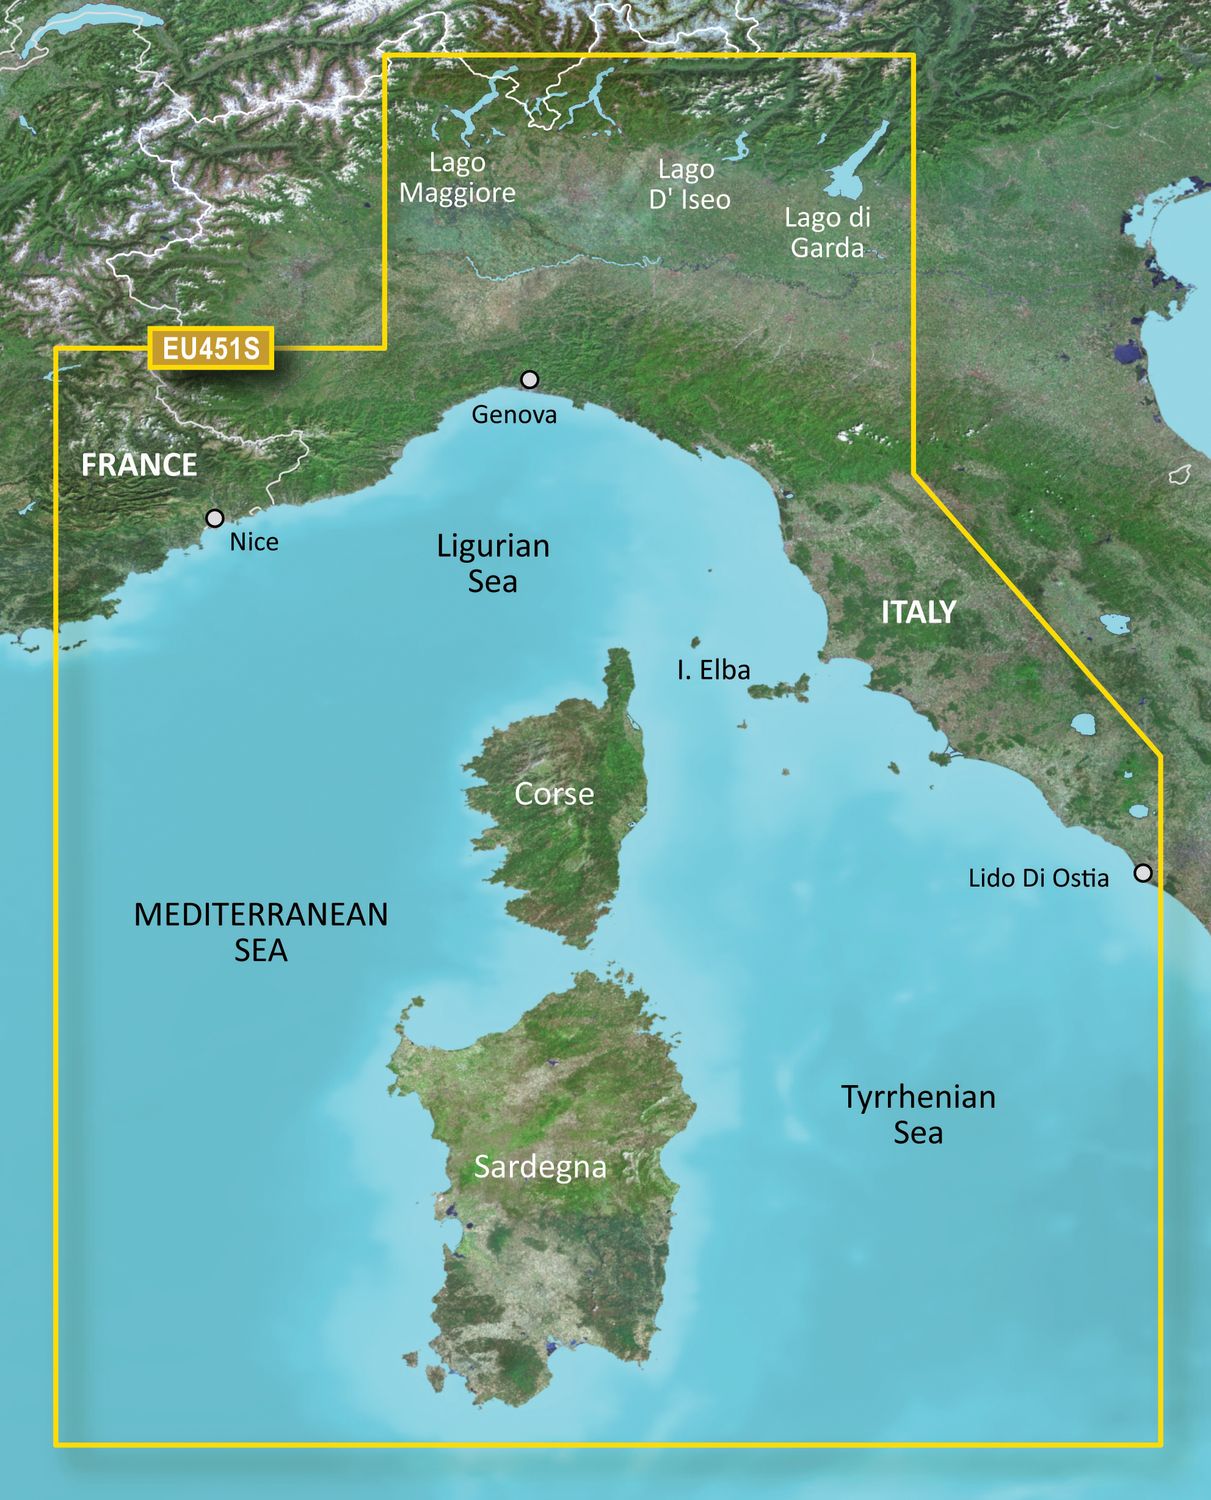 Garmin G3 Vision VEU451S - Ligurian Sea, Corsica and Sardinia